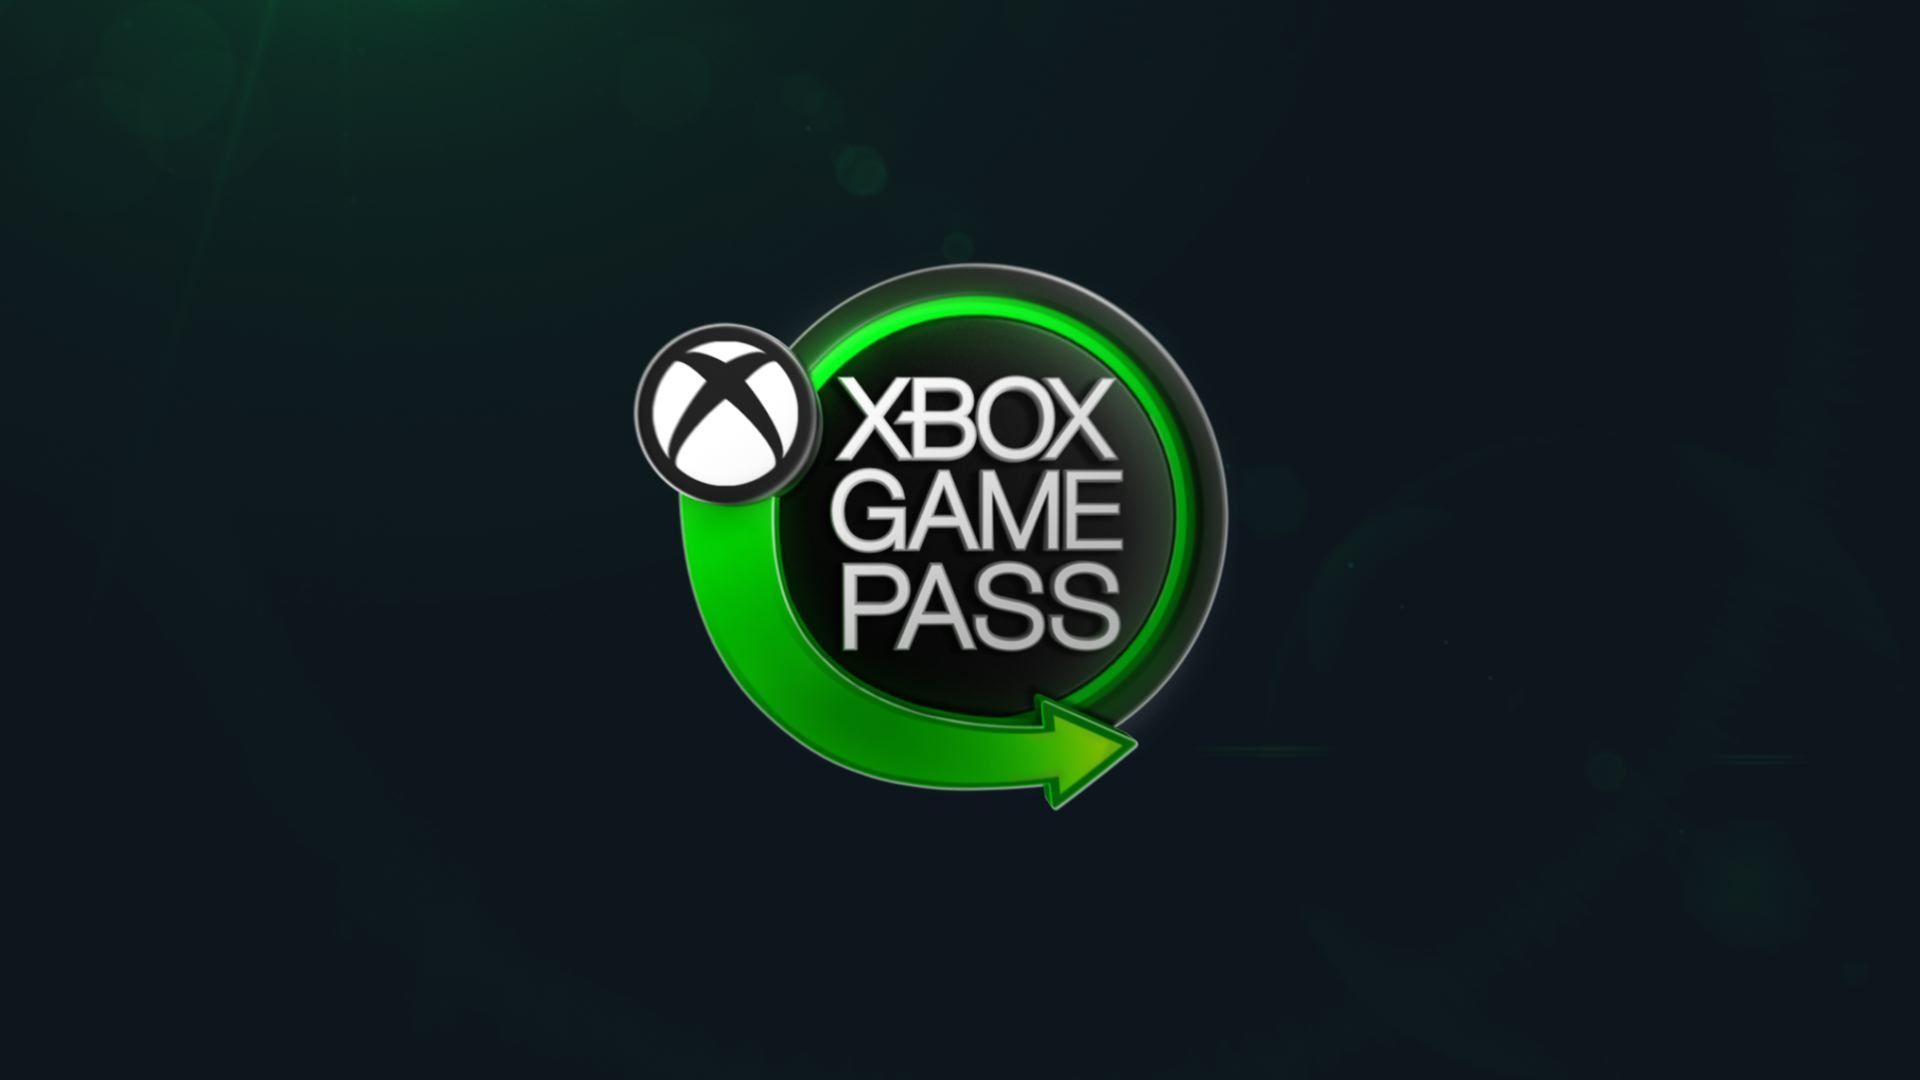 2021 թ.-ին Microsoft-ը Game Pass-ից վաստակել է 2.9 միլիարդ դոլար